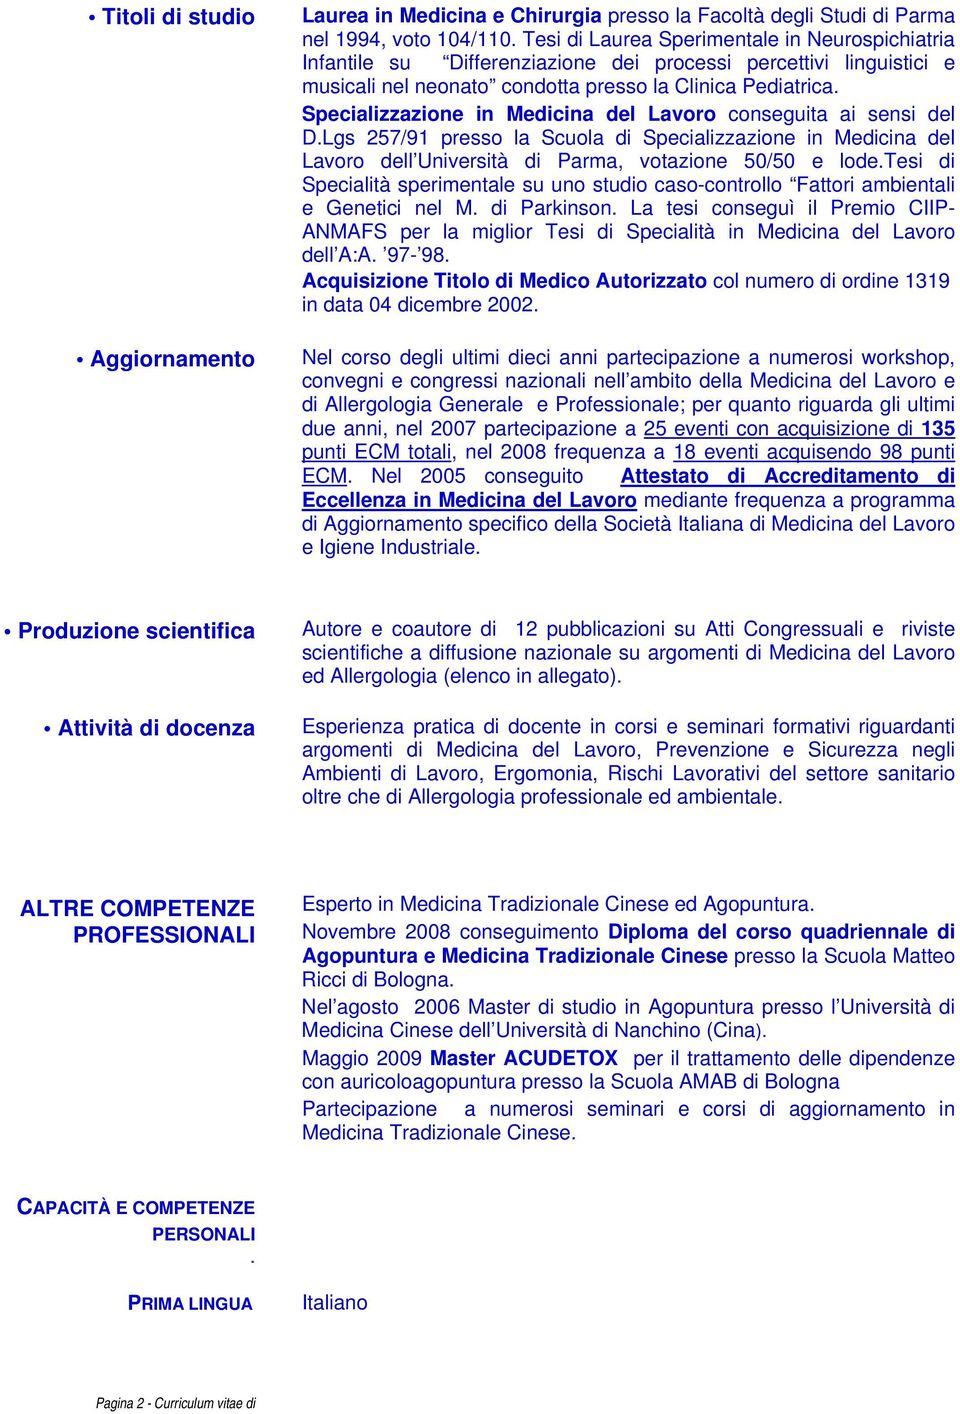 Specializzazione in Medicina del Lavoro dell Università di Parma, votazione 50/50 e lodetesi di Specialità sperimentale su uno studio caso-controllo Fattori ambientali e Genetici nel M di Parkinson